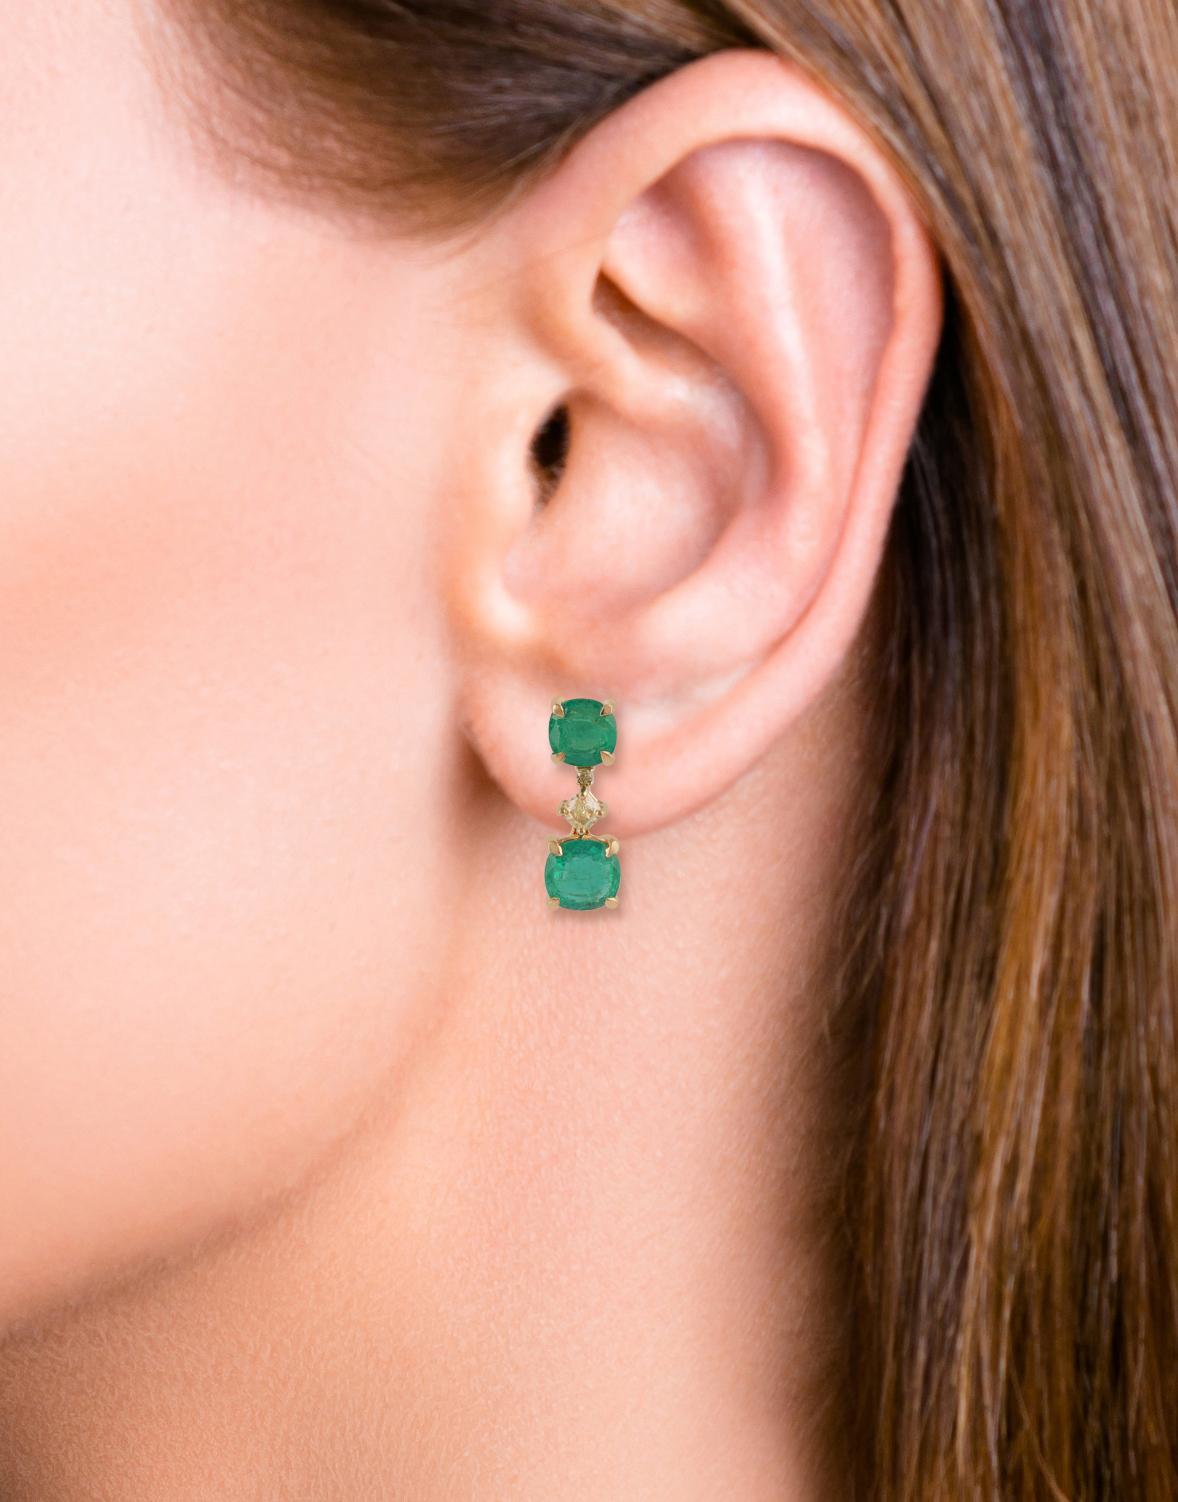 Oval Cut 3.62 Carat Clear Zambian Emerald & Diamond Stud Earring in 18K Yellow gold For Sale